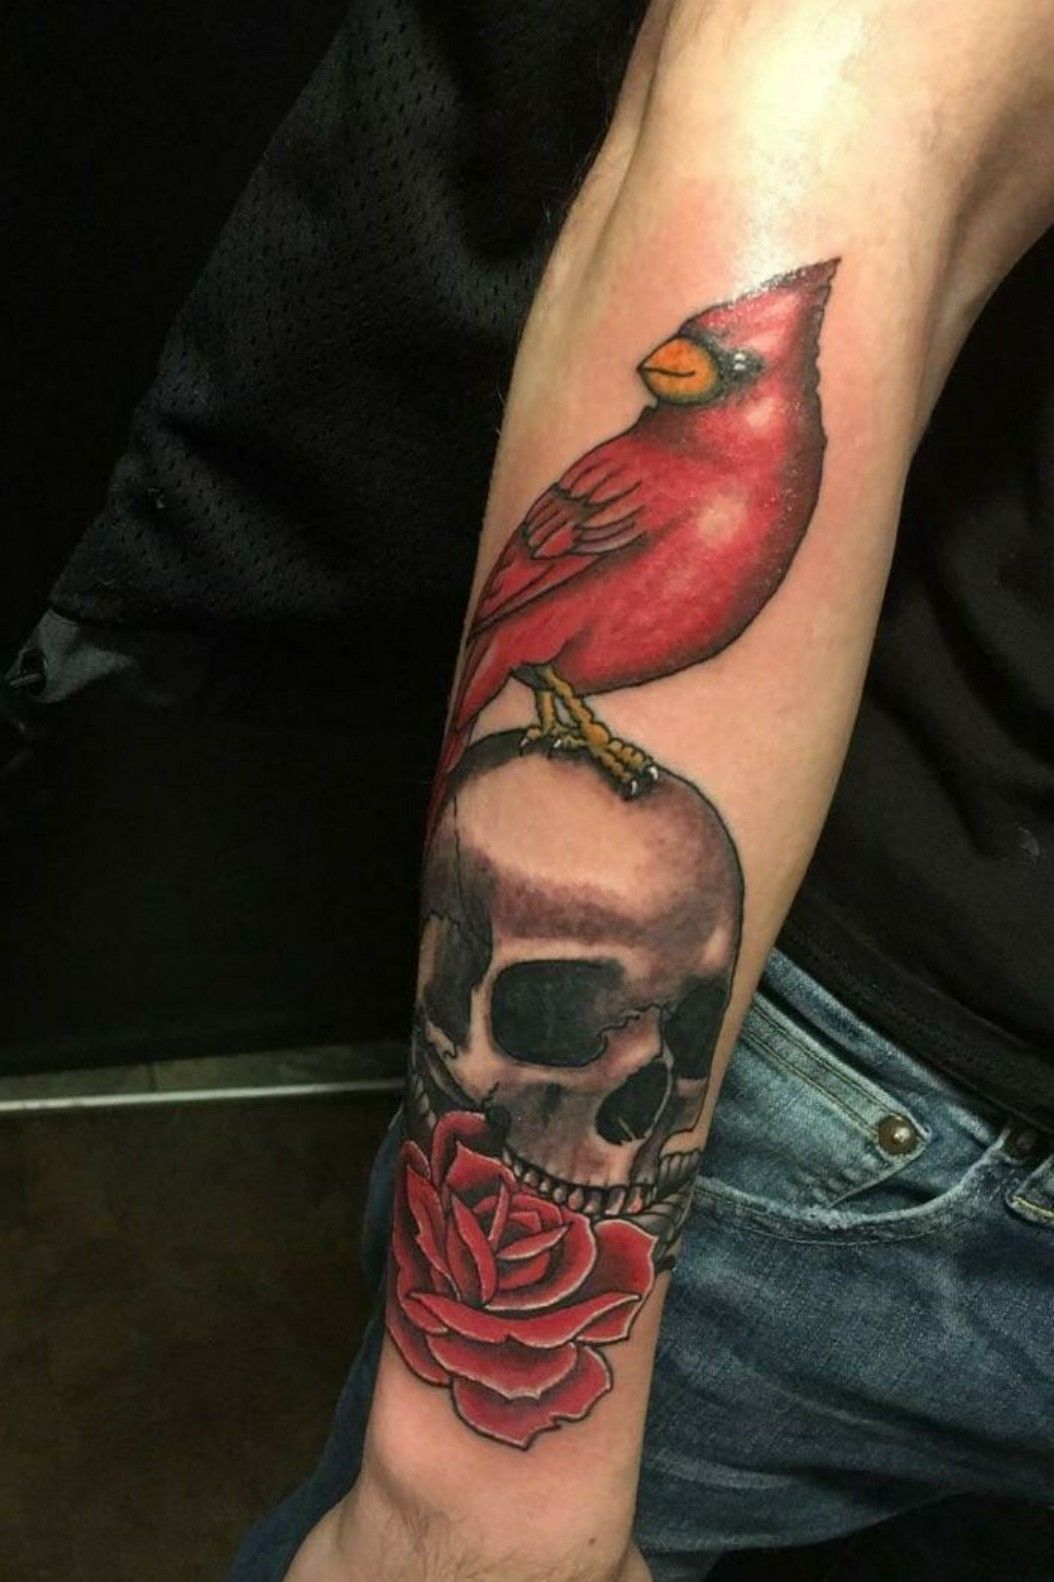 7 Cardinals and Roses ideas  cardinal tattoos cardinals rose tattoos